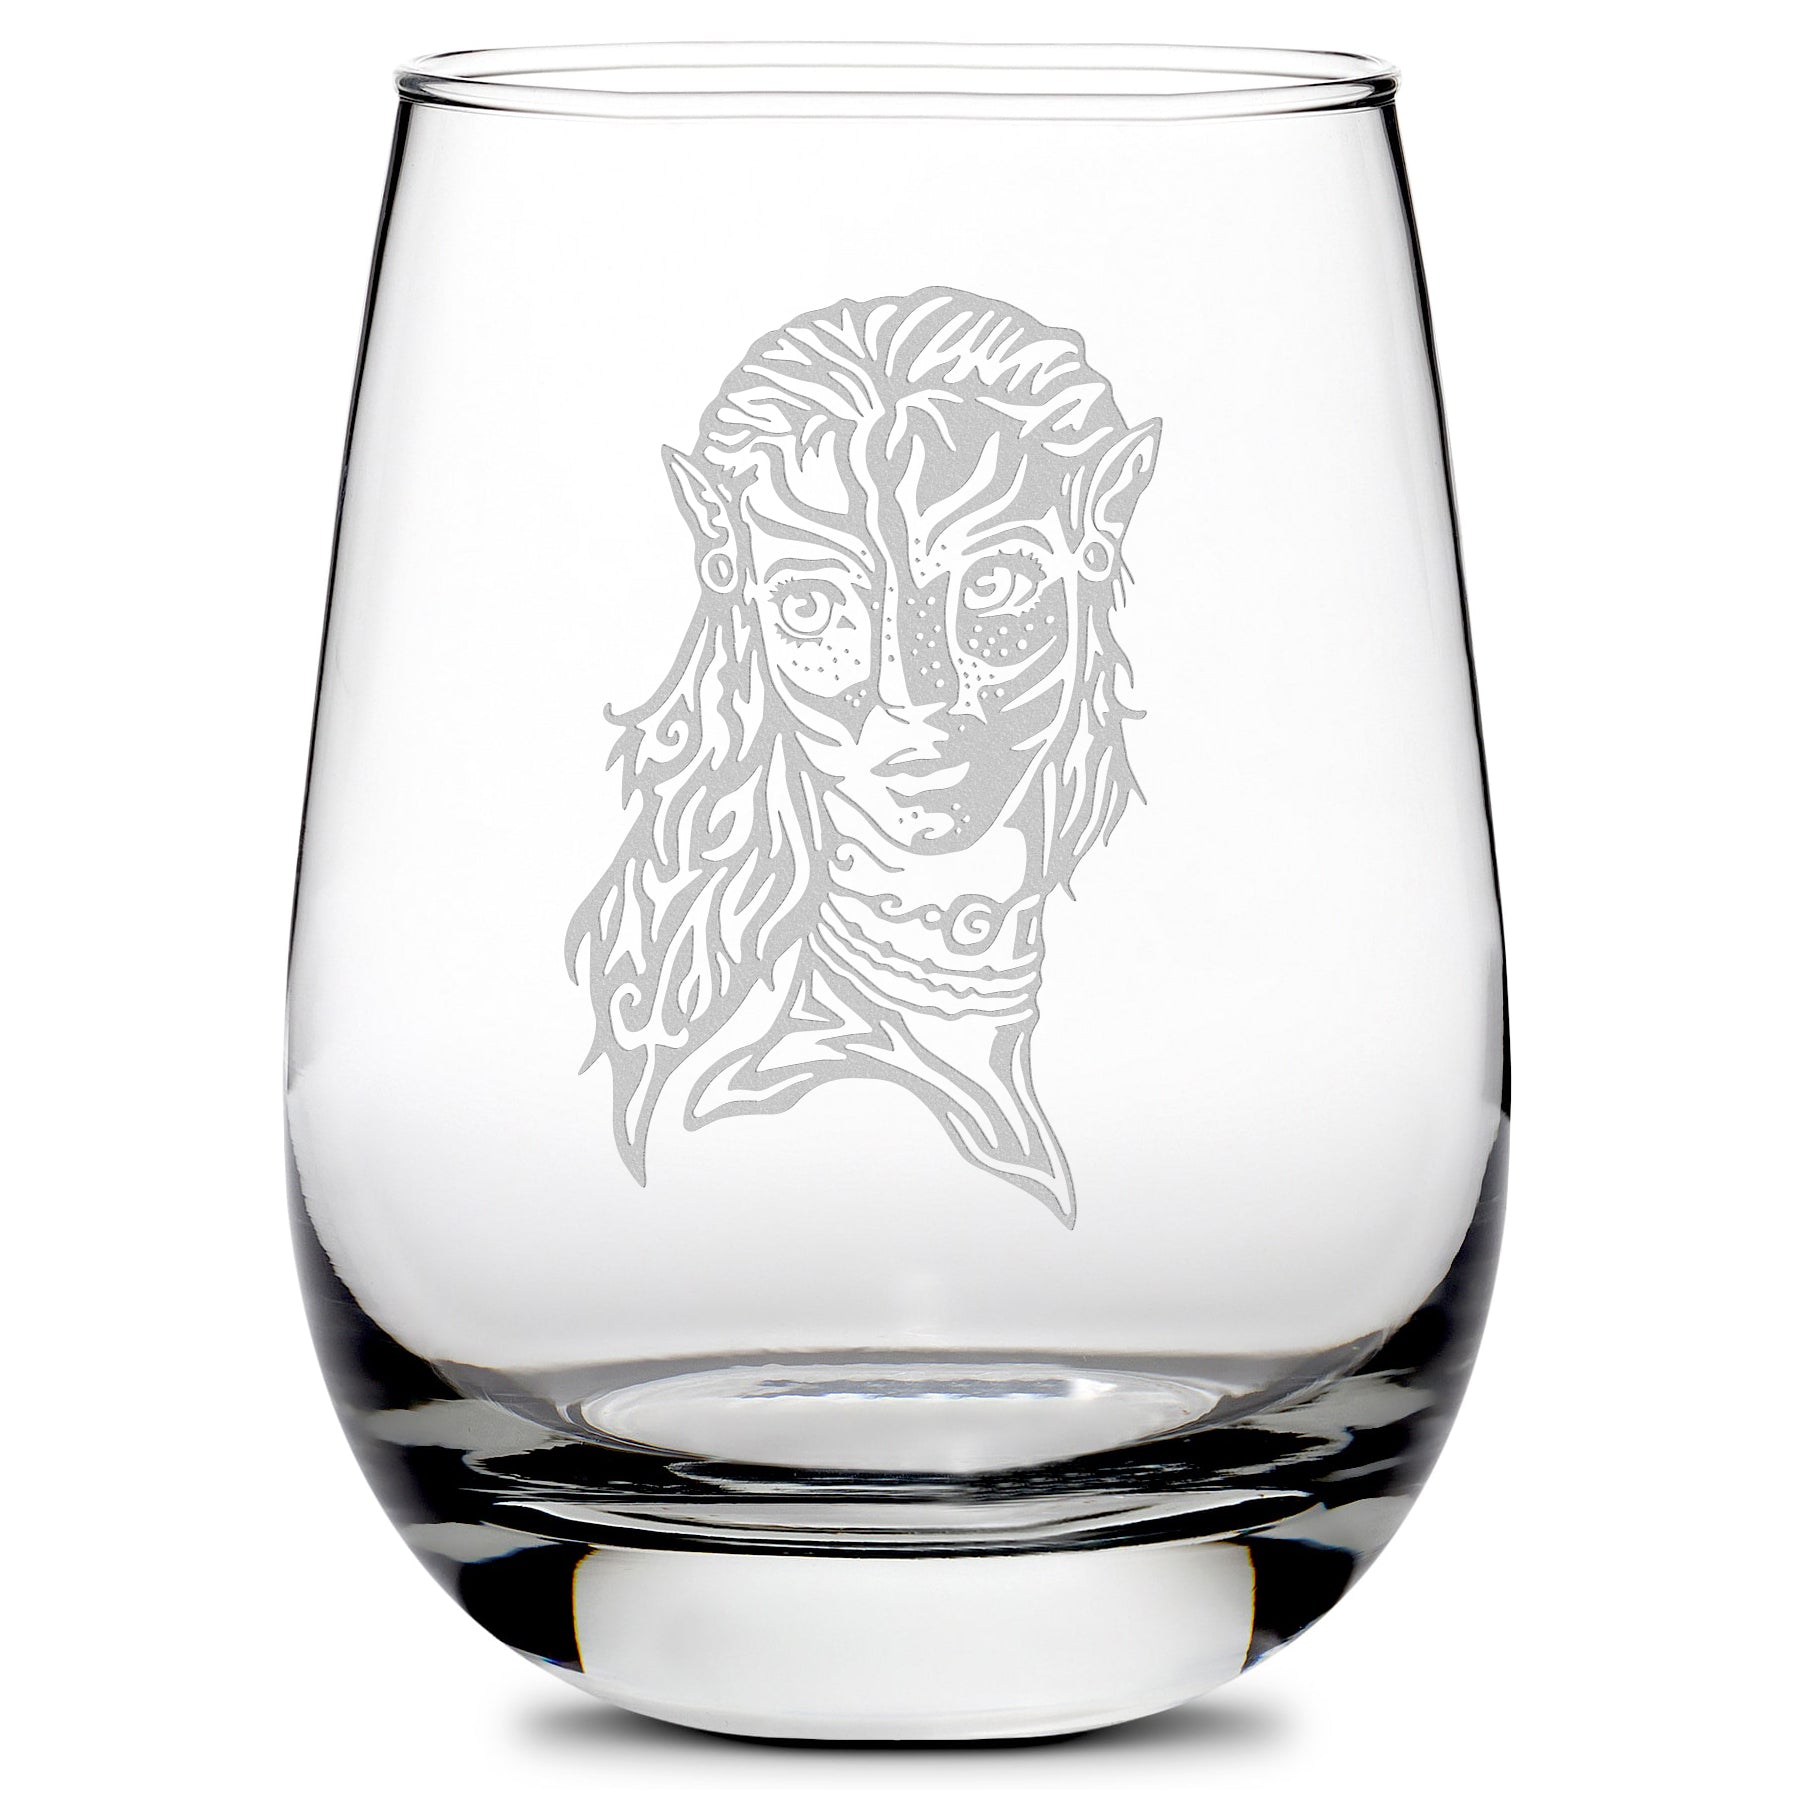 Premium Wine Glass, Avatar Neytiri, 16oz